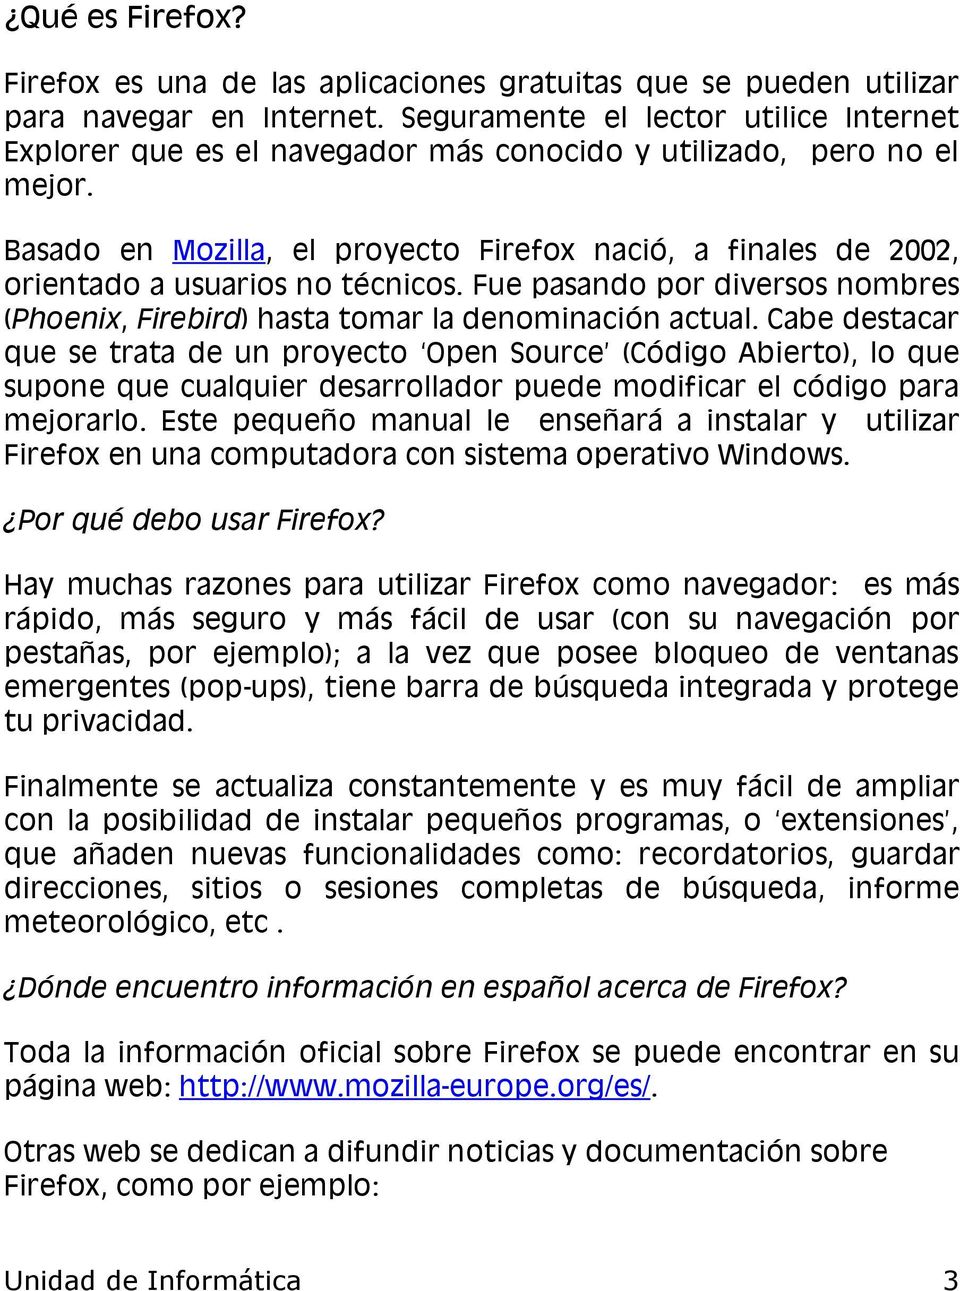 Basado en Mozilla, el proyecto Firefox nació, a finales de 2002, orientado a usuarios no técnicos. Fue pasando por diversos nombres (Phoenix, Firebird) hasta tomar la denominación actual.